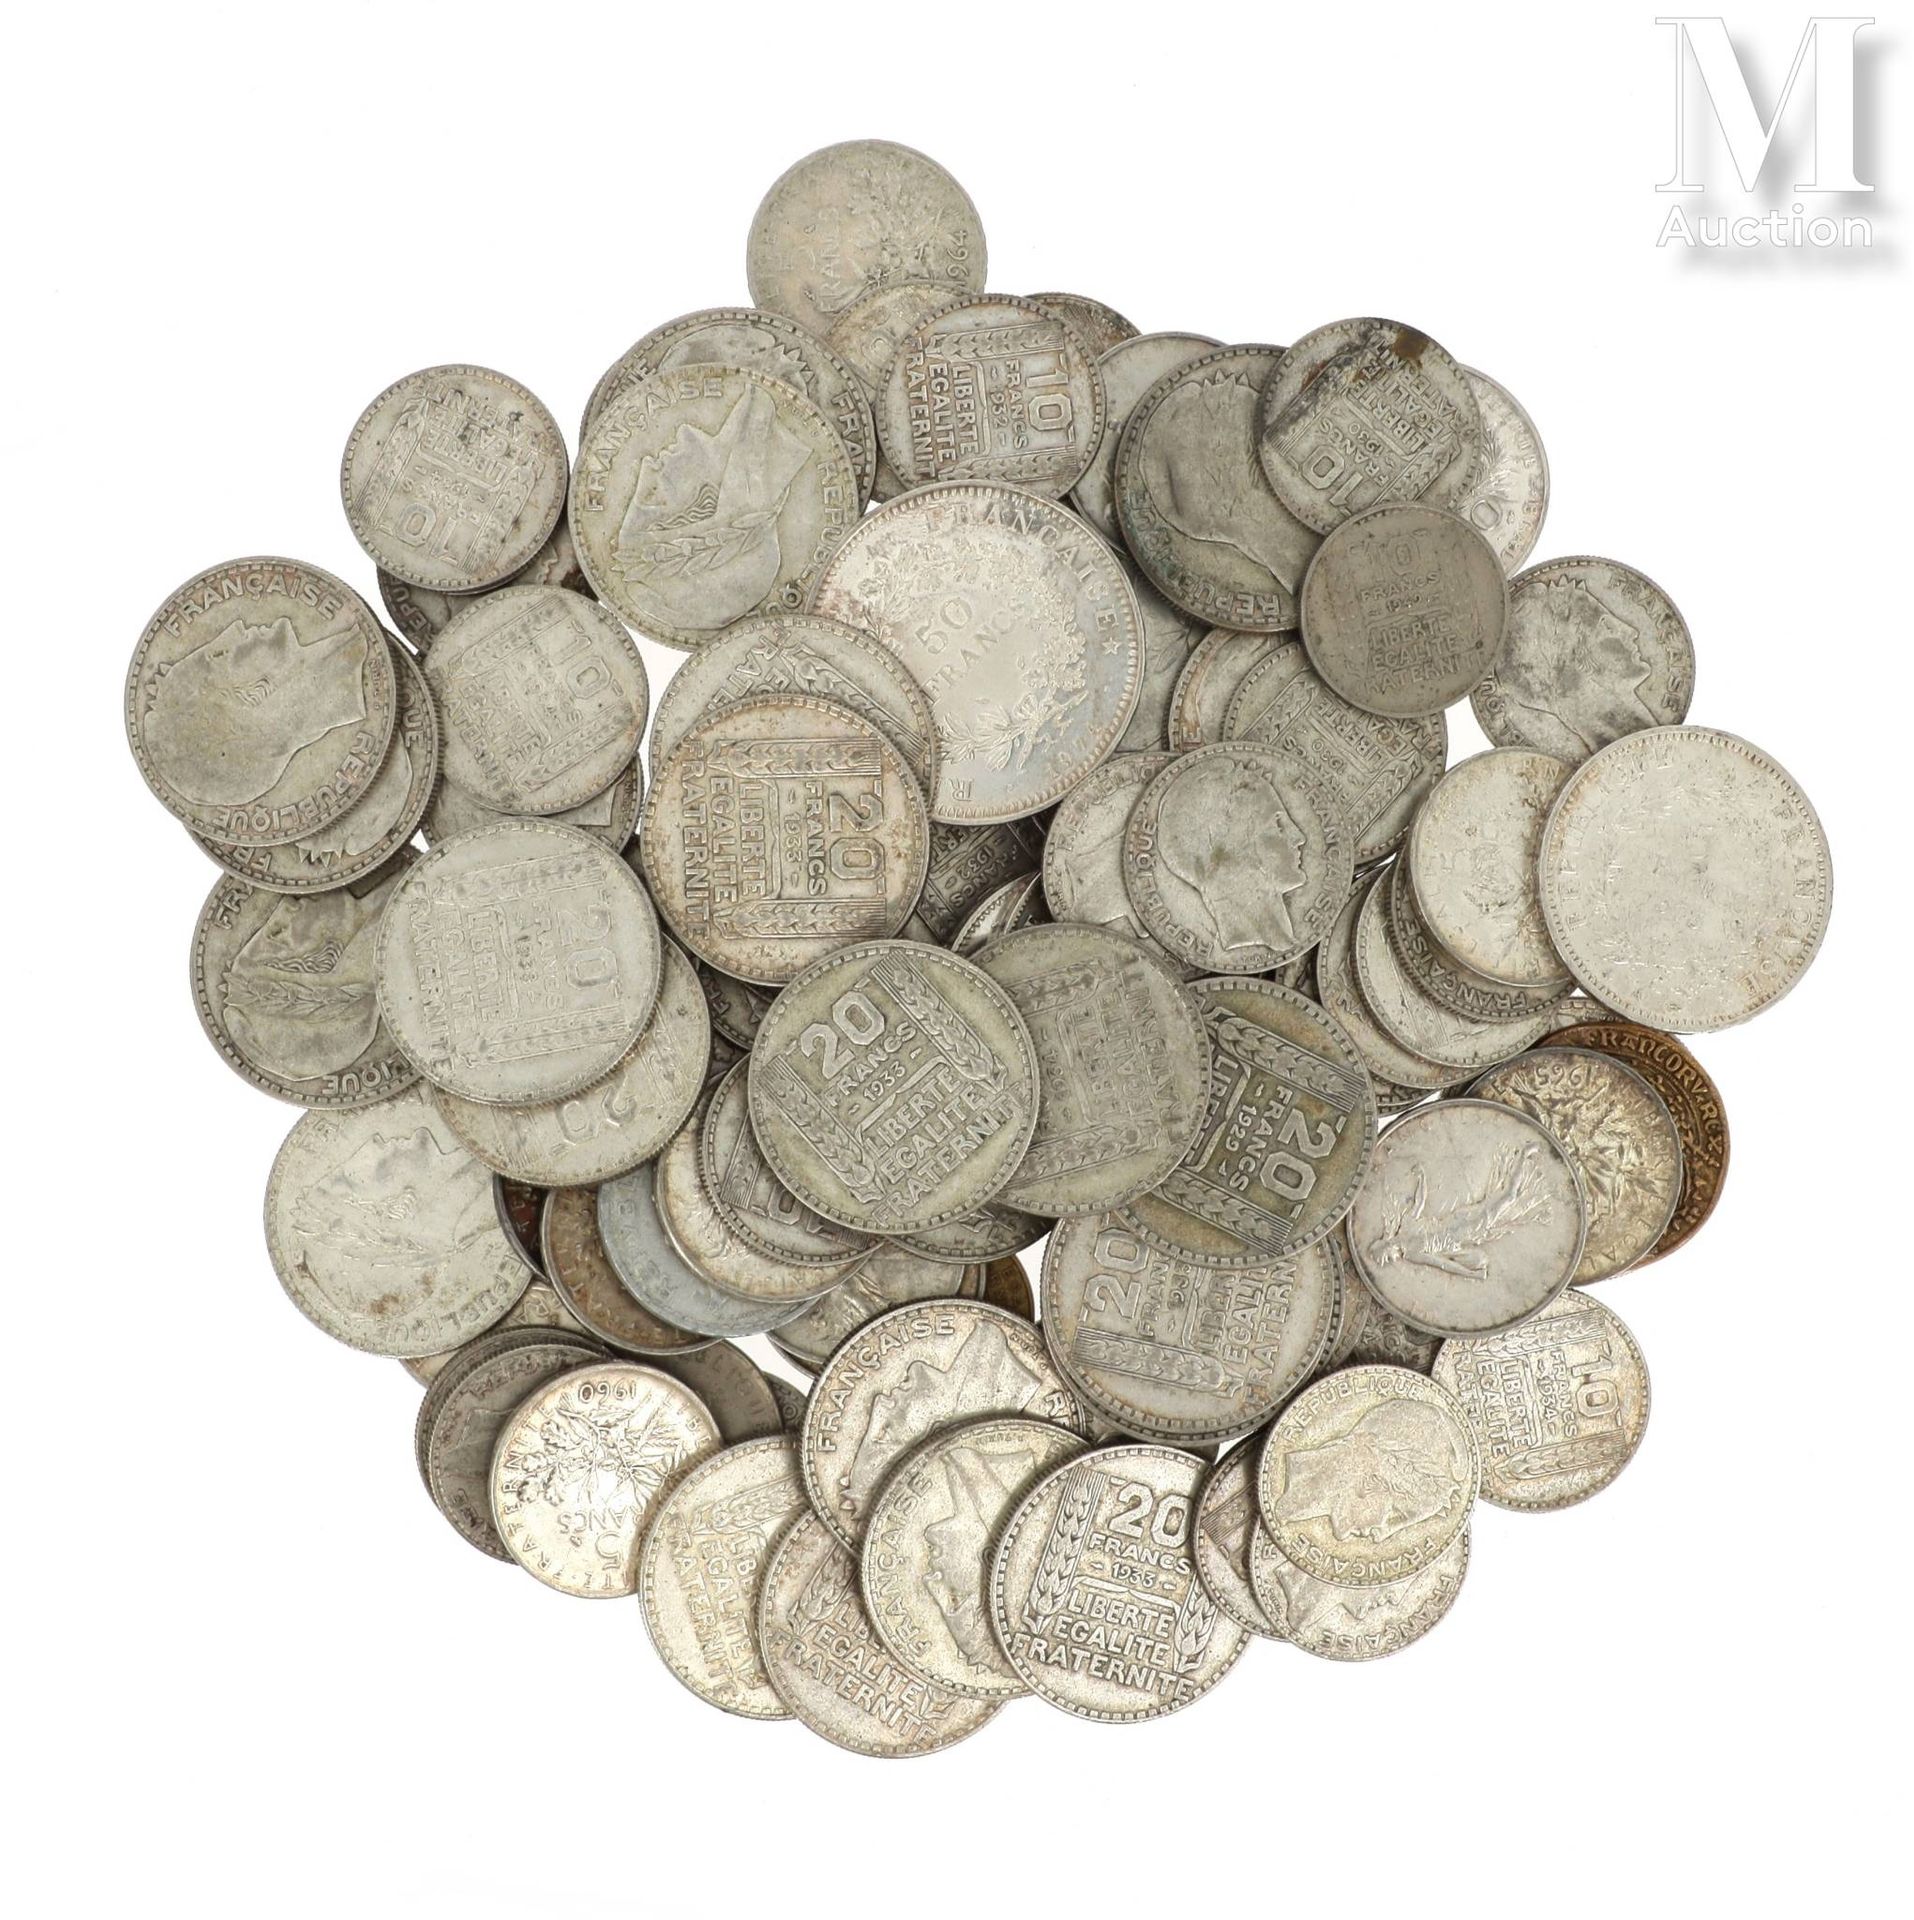 LOT DE PIECES DE MONNAIE EN ARGENT Lot of silver coins including : 

- 1 x 100 F&hellip;